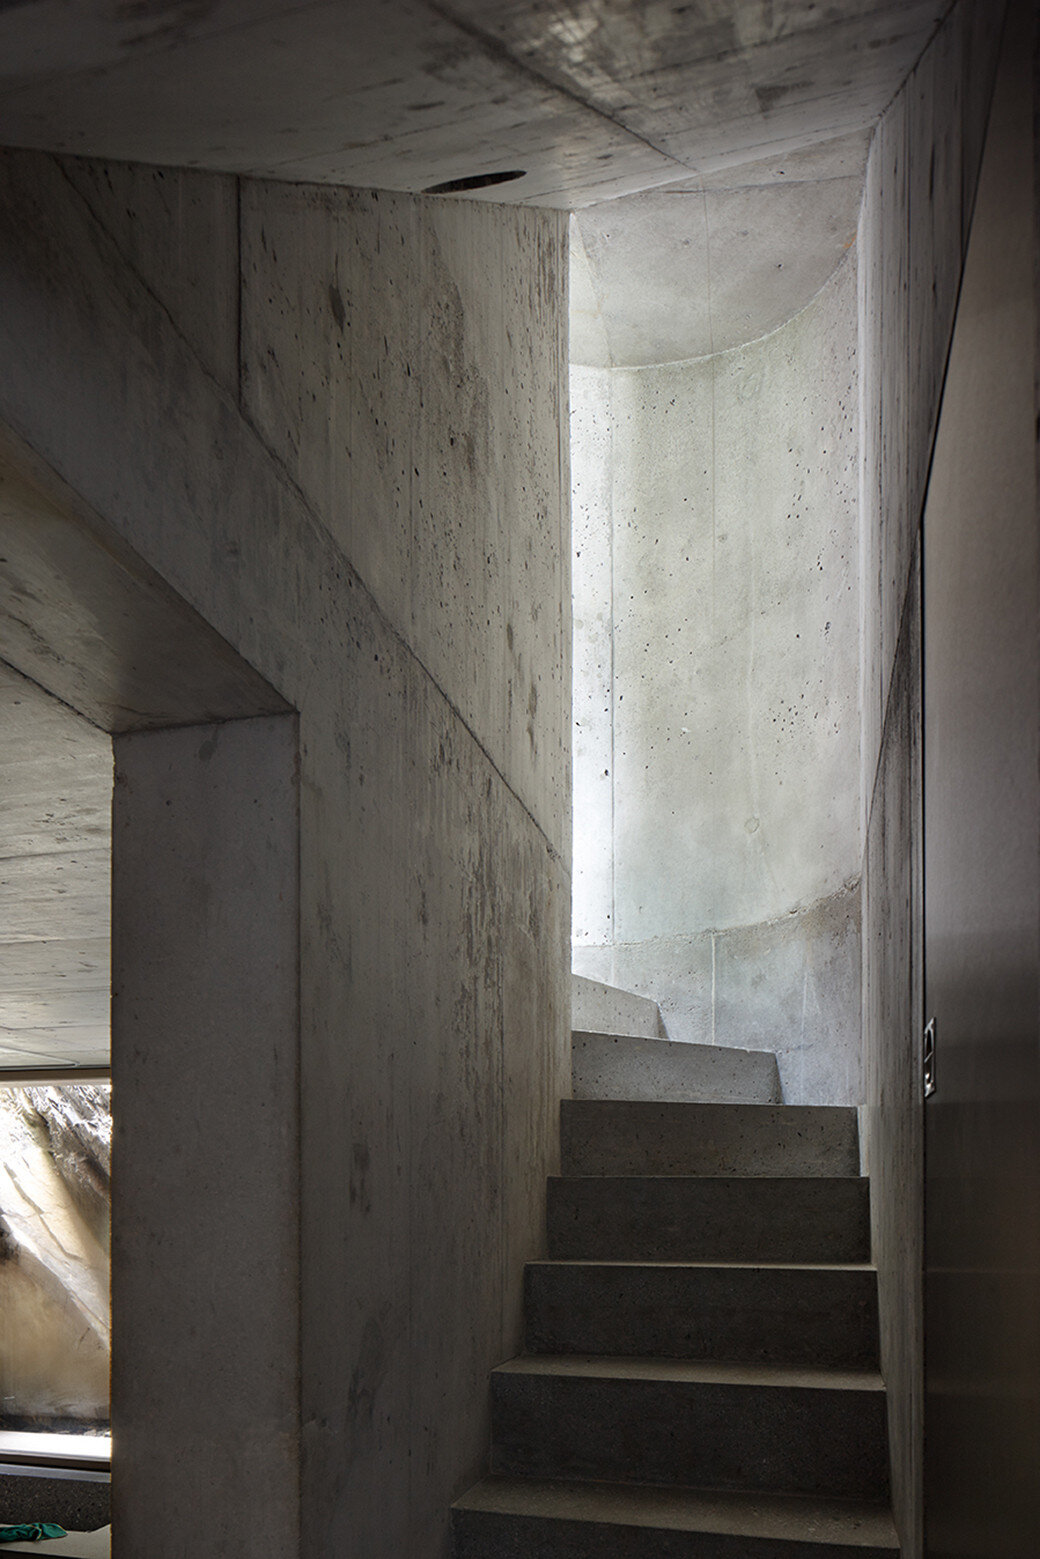 Fascinating concrete cabin in the Swiss Alps by German architecture studio Nickisch Sano Walder Architekten (5)